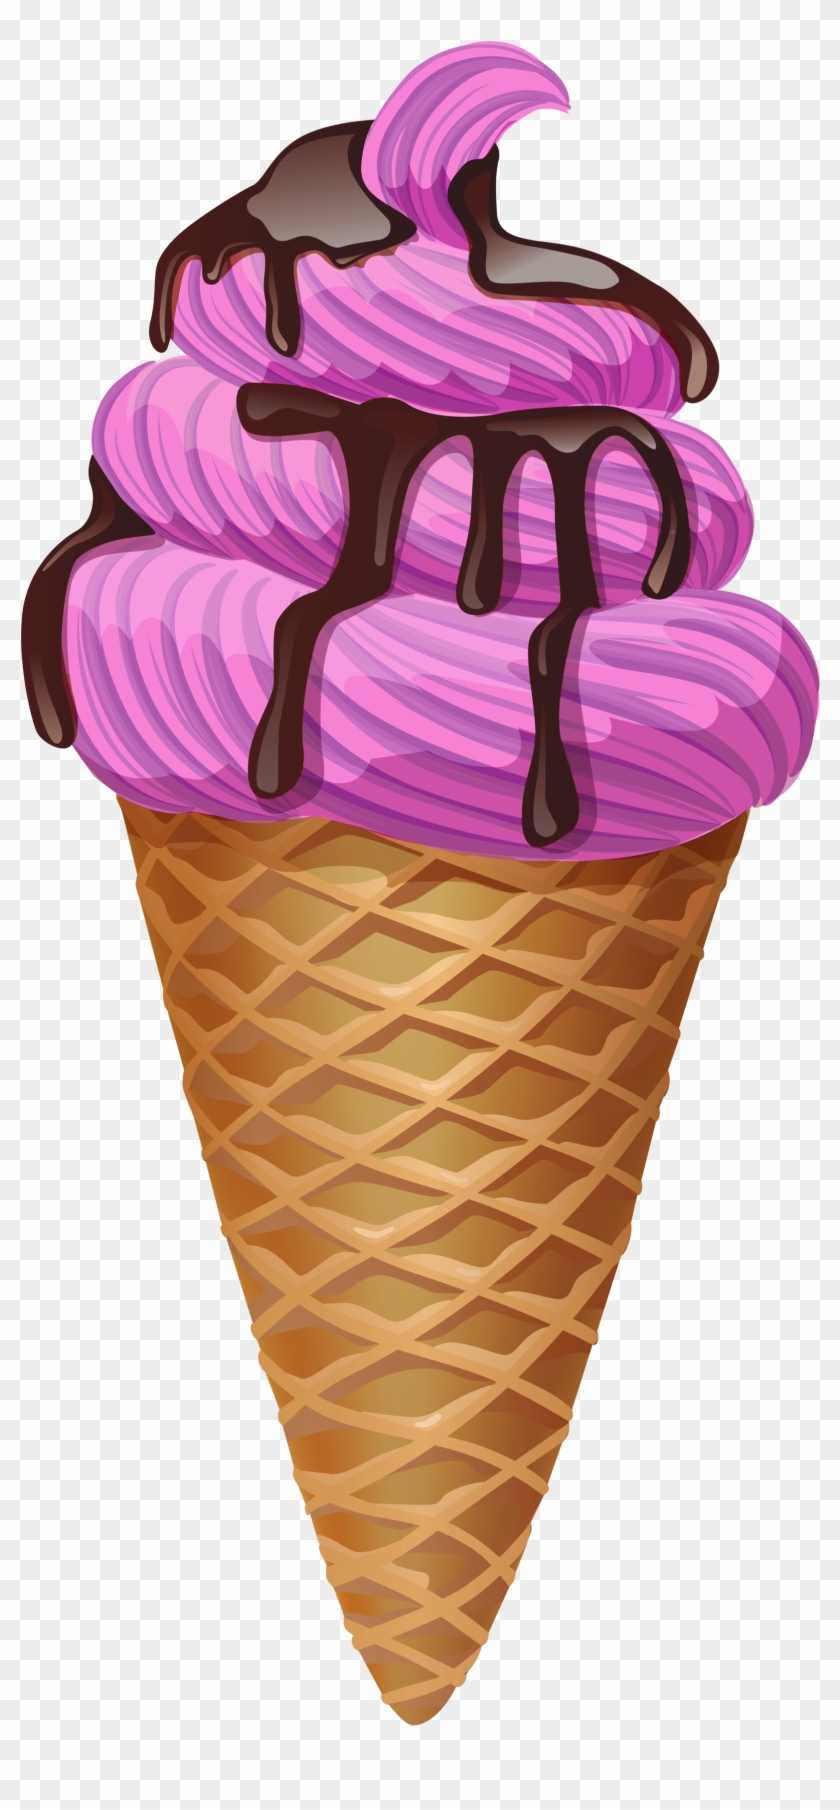 Transparent Pink Ice Cream Cone Picture - Ice Cream Cone Transparent #553396